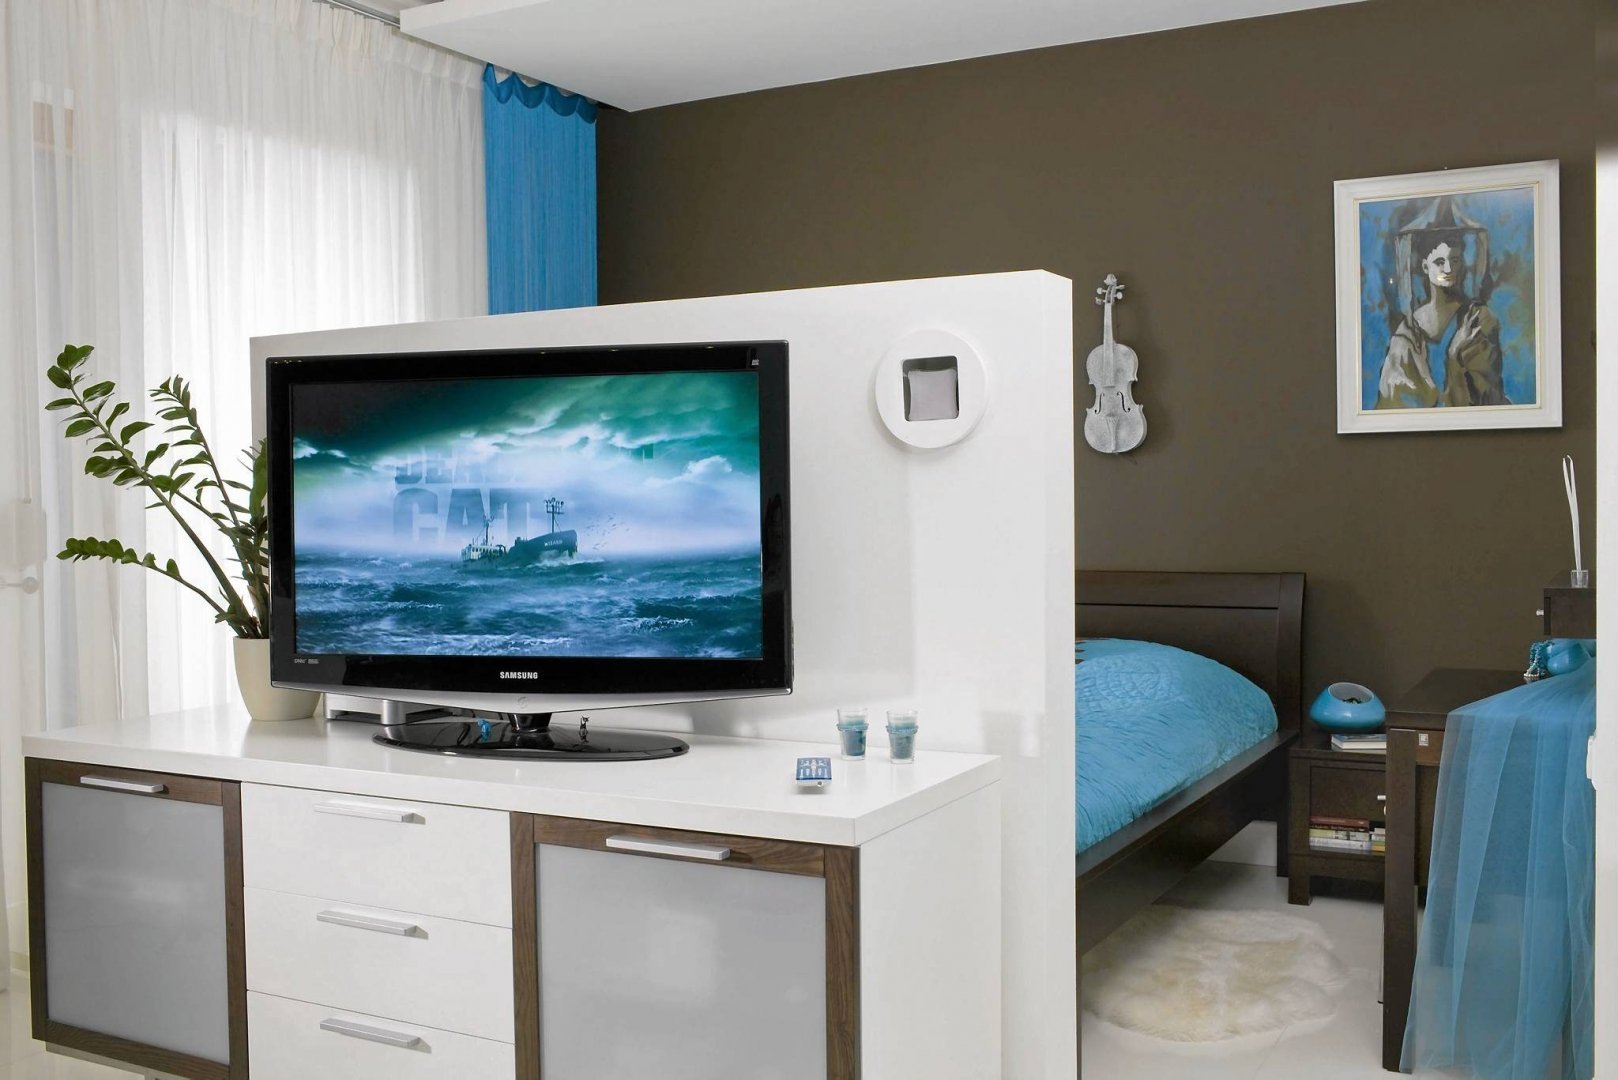 Купить телевизор в комнату. Телевизор в спальне. Телевизор в центре комнаты. Спальня с перегородкой для телевизора. Телевизор на тумбе посреди комнаты.